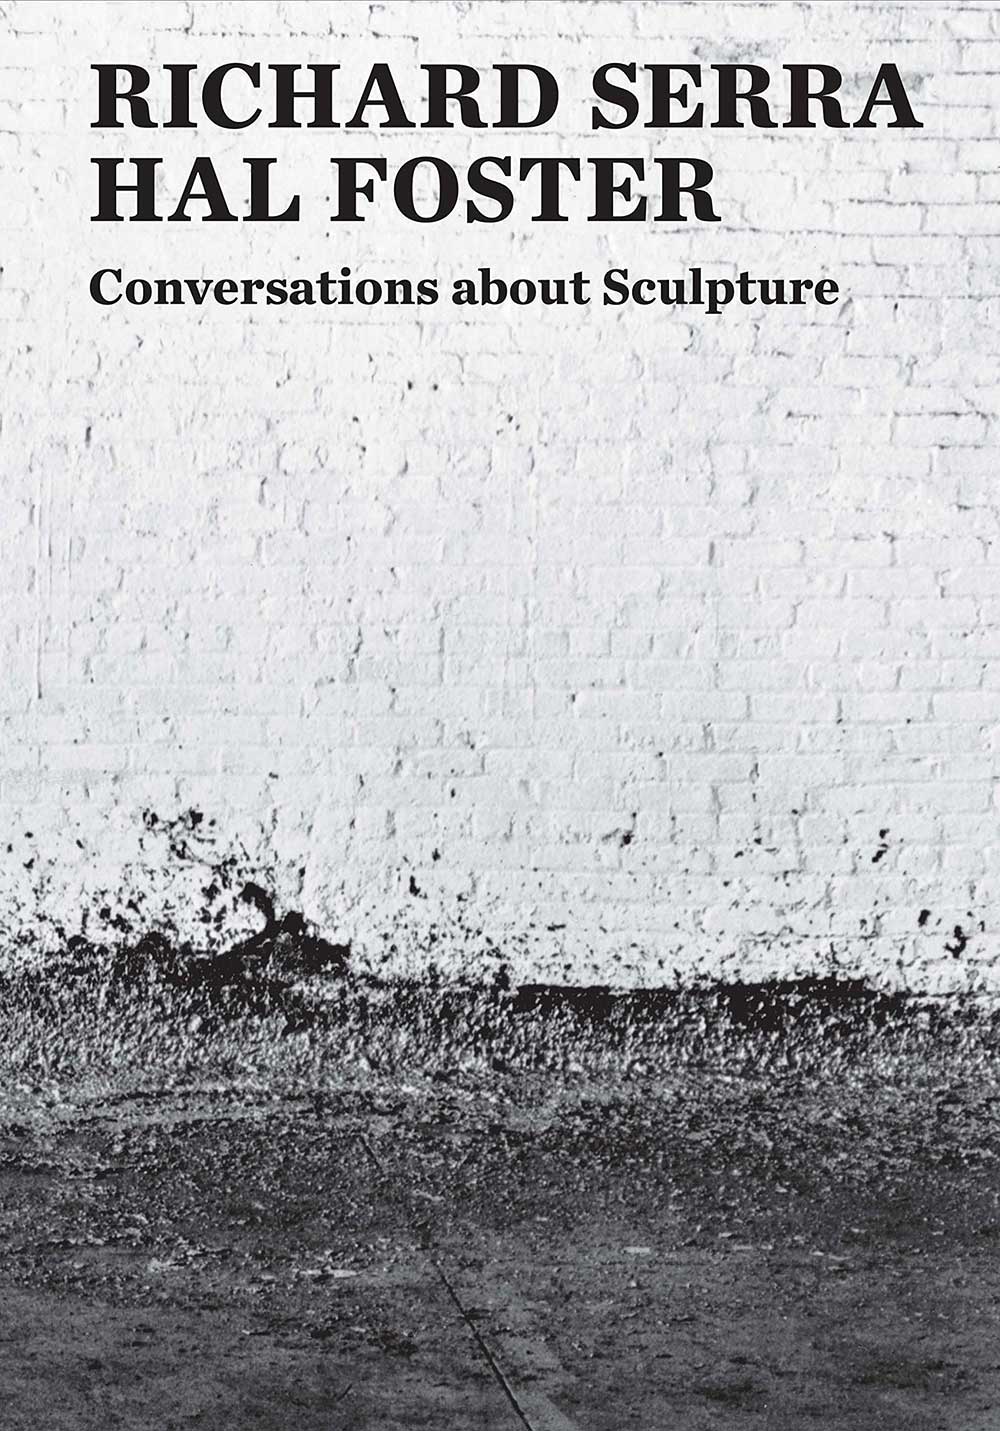 Richard Serra: Conversations about Sculpture